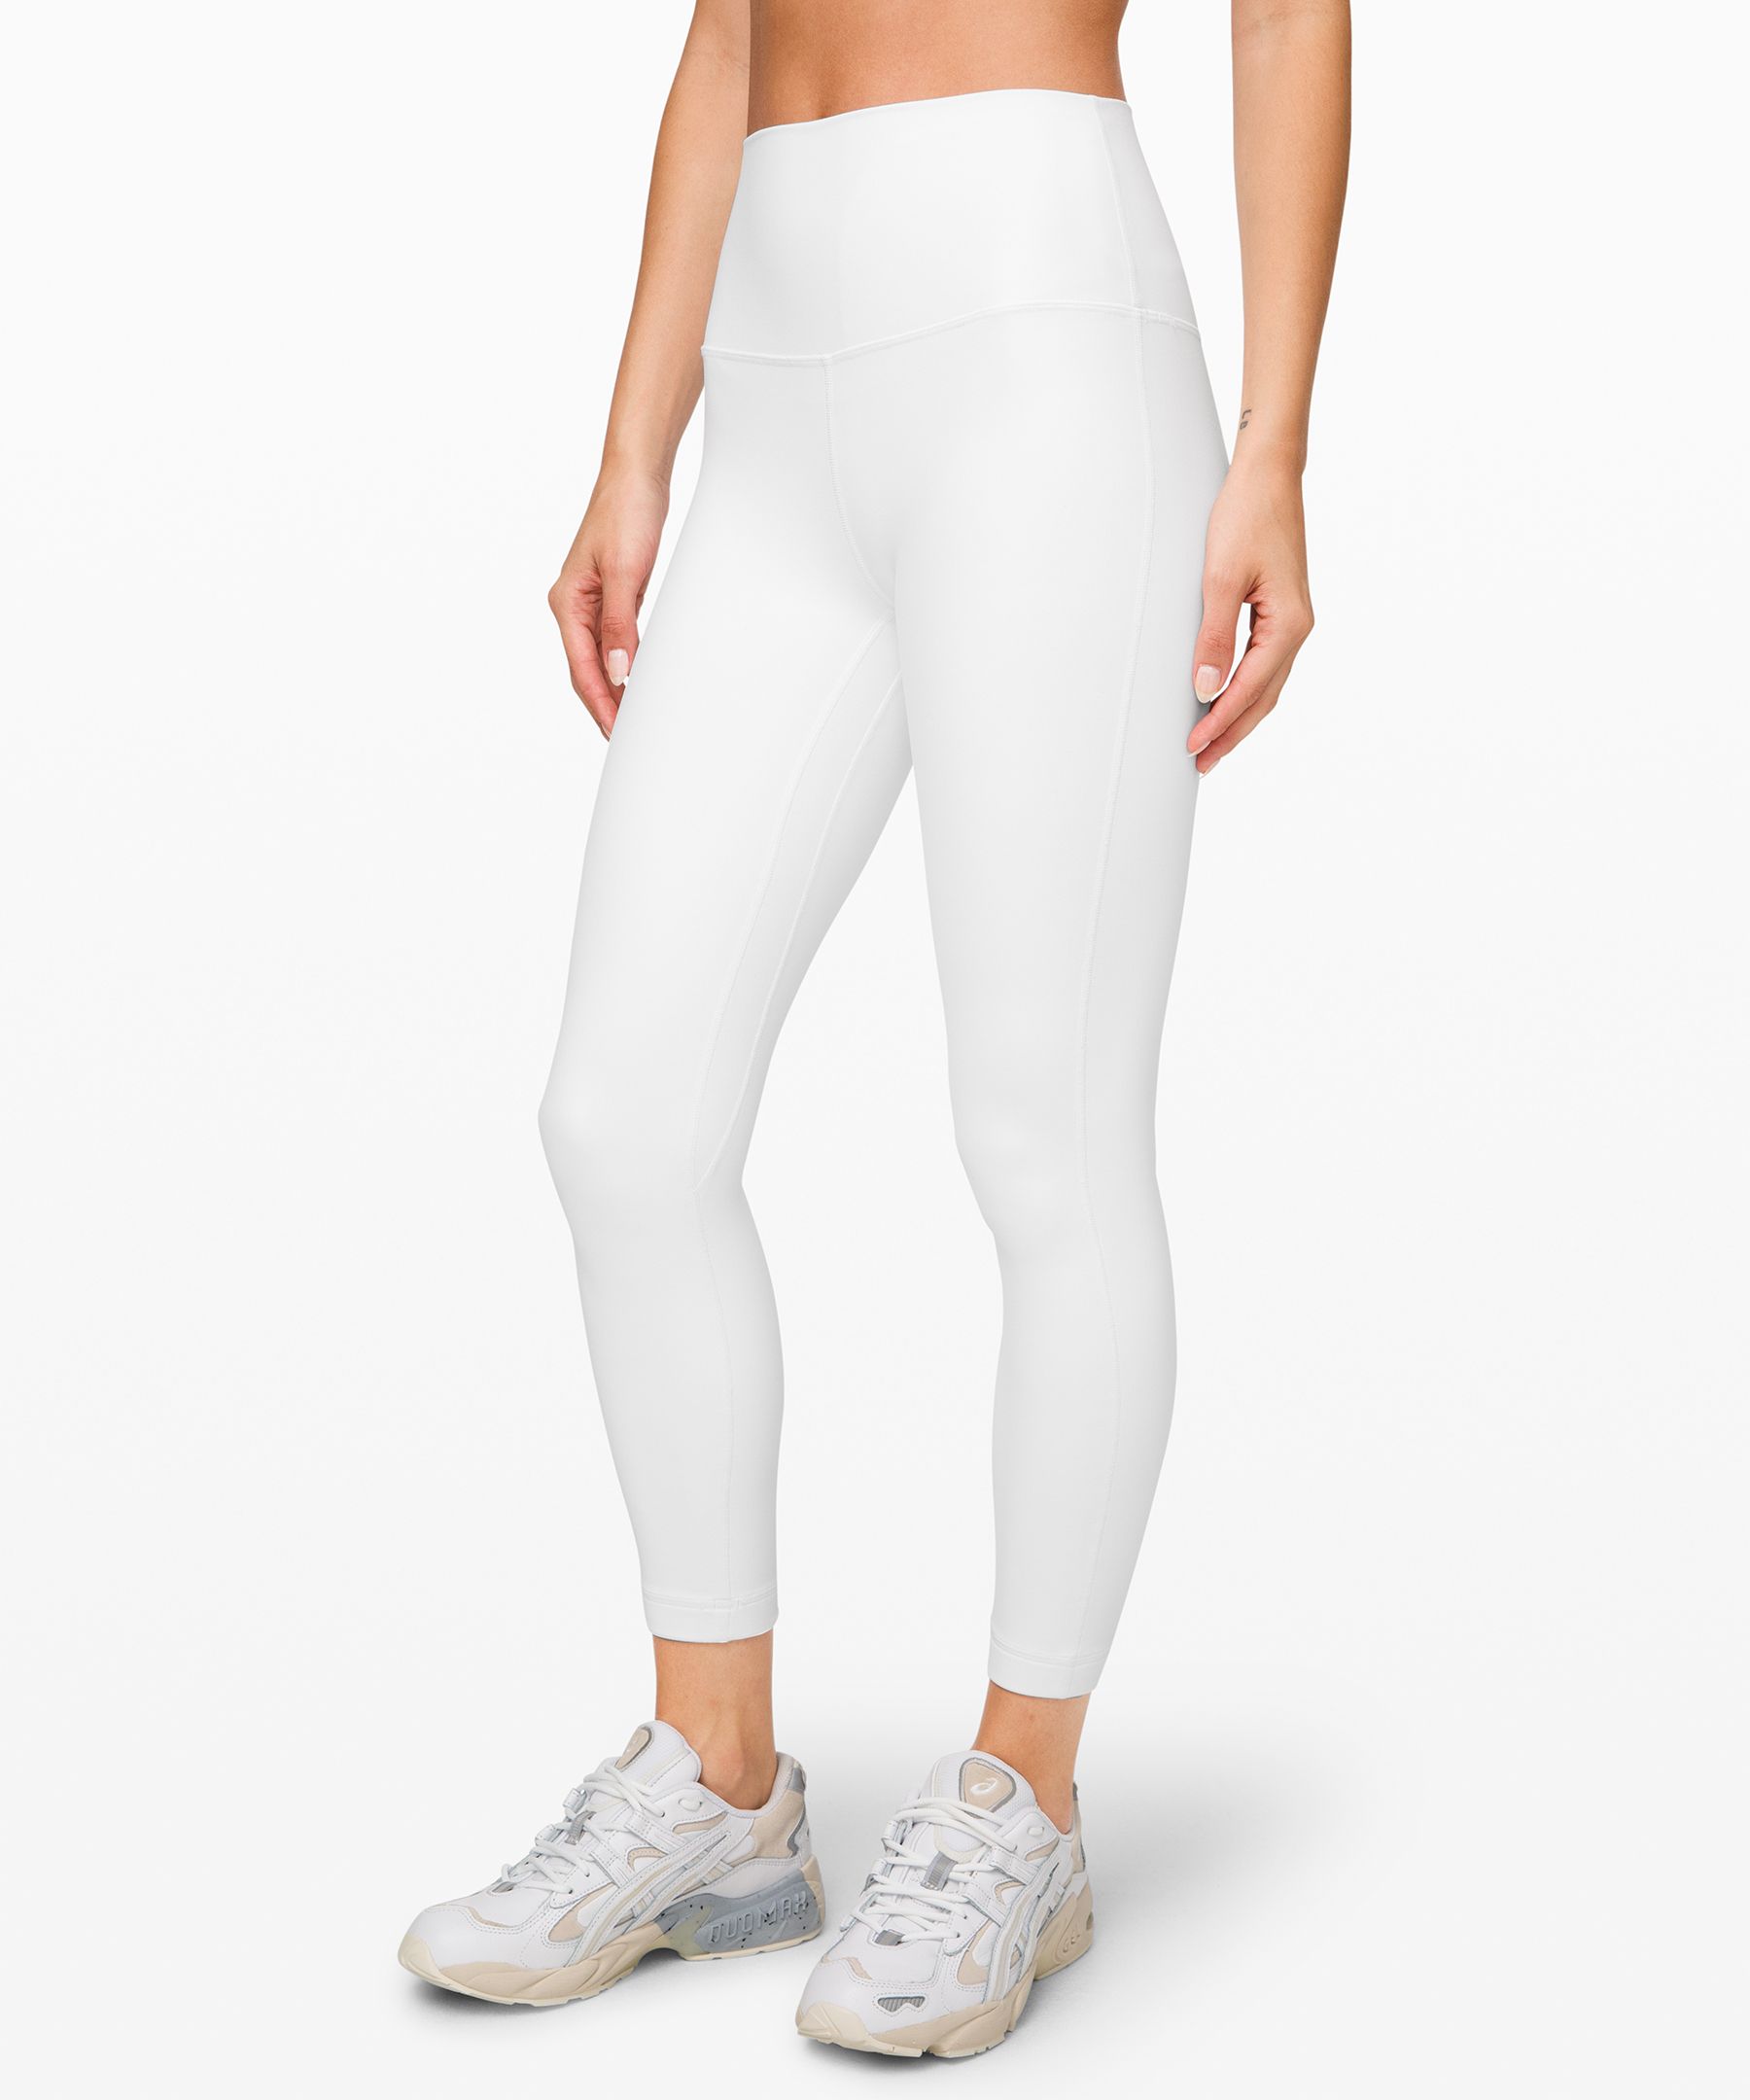 Lululemon Align™ High-rise Pants 25" In White